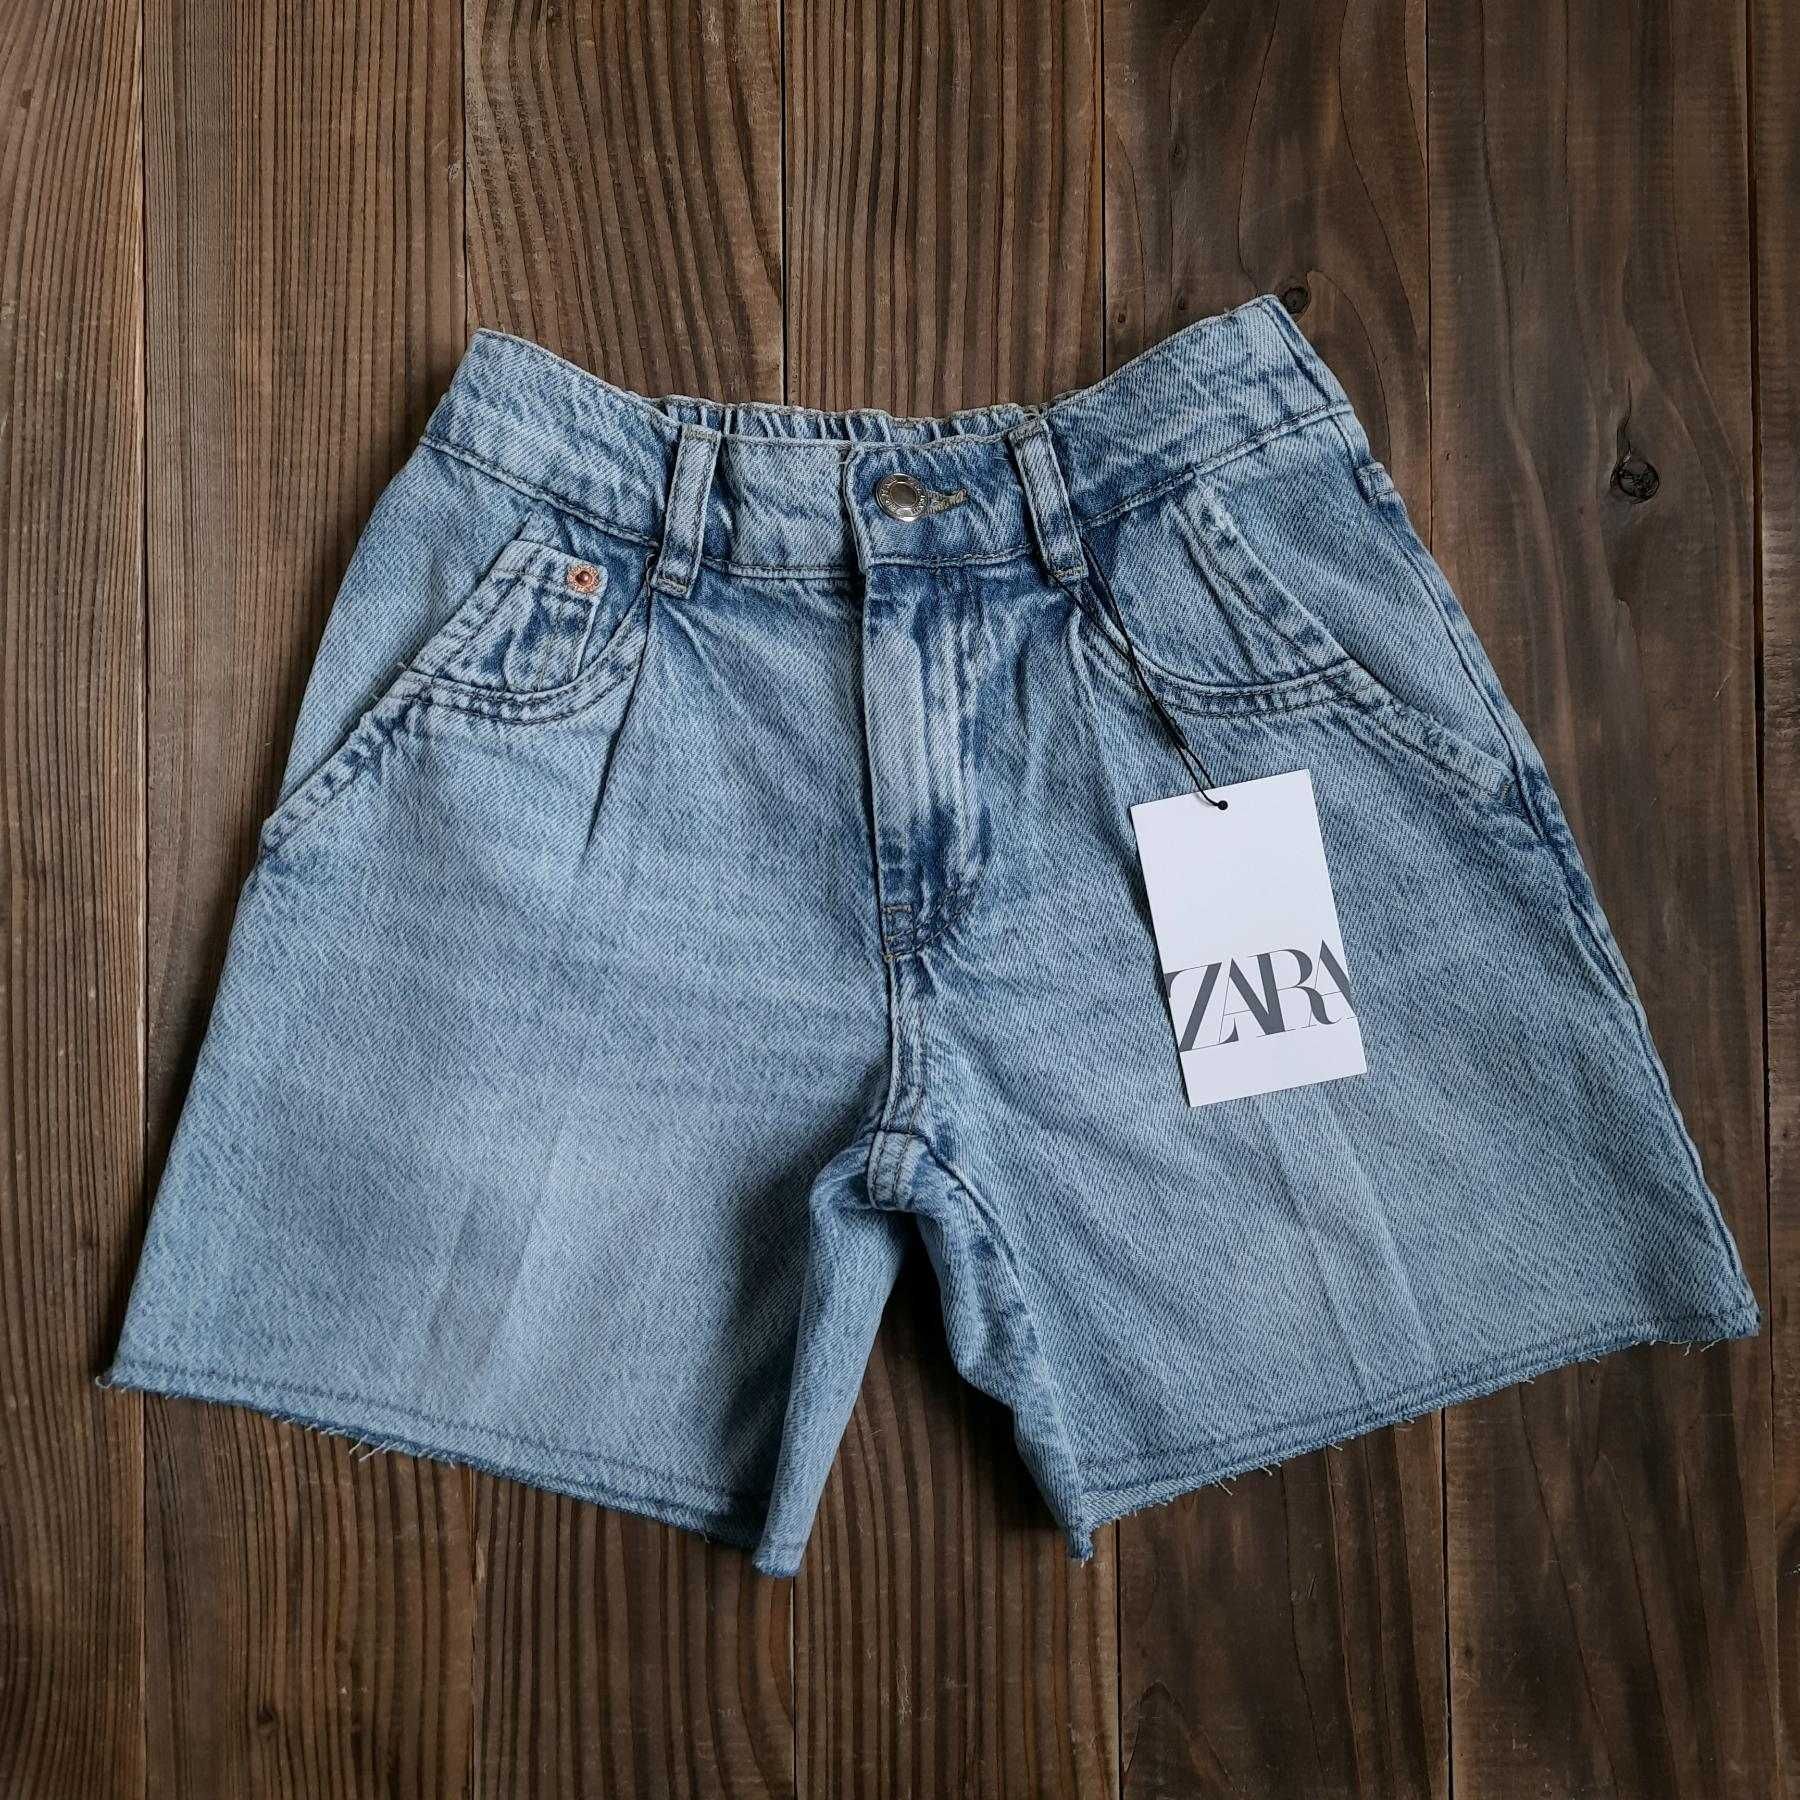 Нові джинсові шорти, футболка Zara, купальник HM на 7-8 років 128 зара